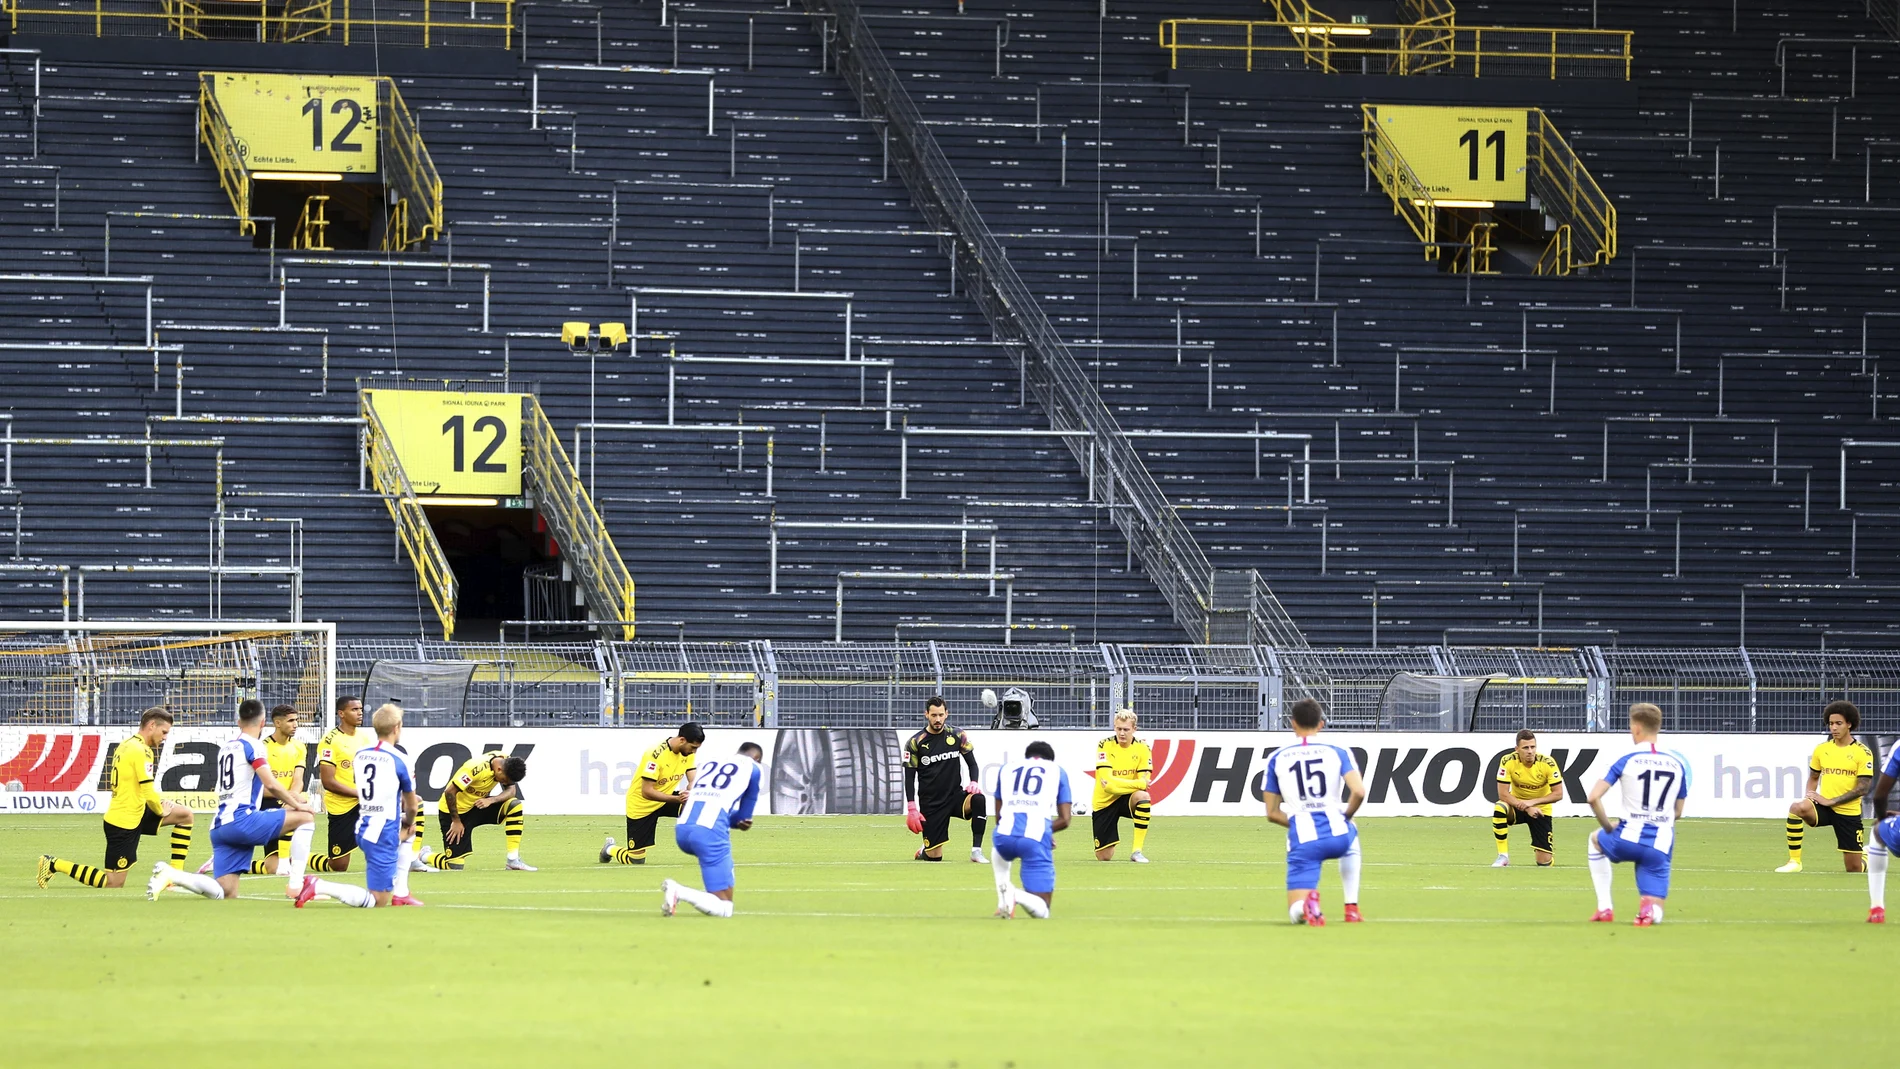 Jugadores del Dortmund y del Hertha, rodilla en tierra antes de comenzar su partido